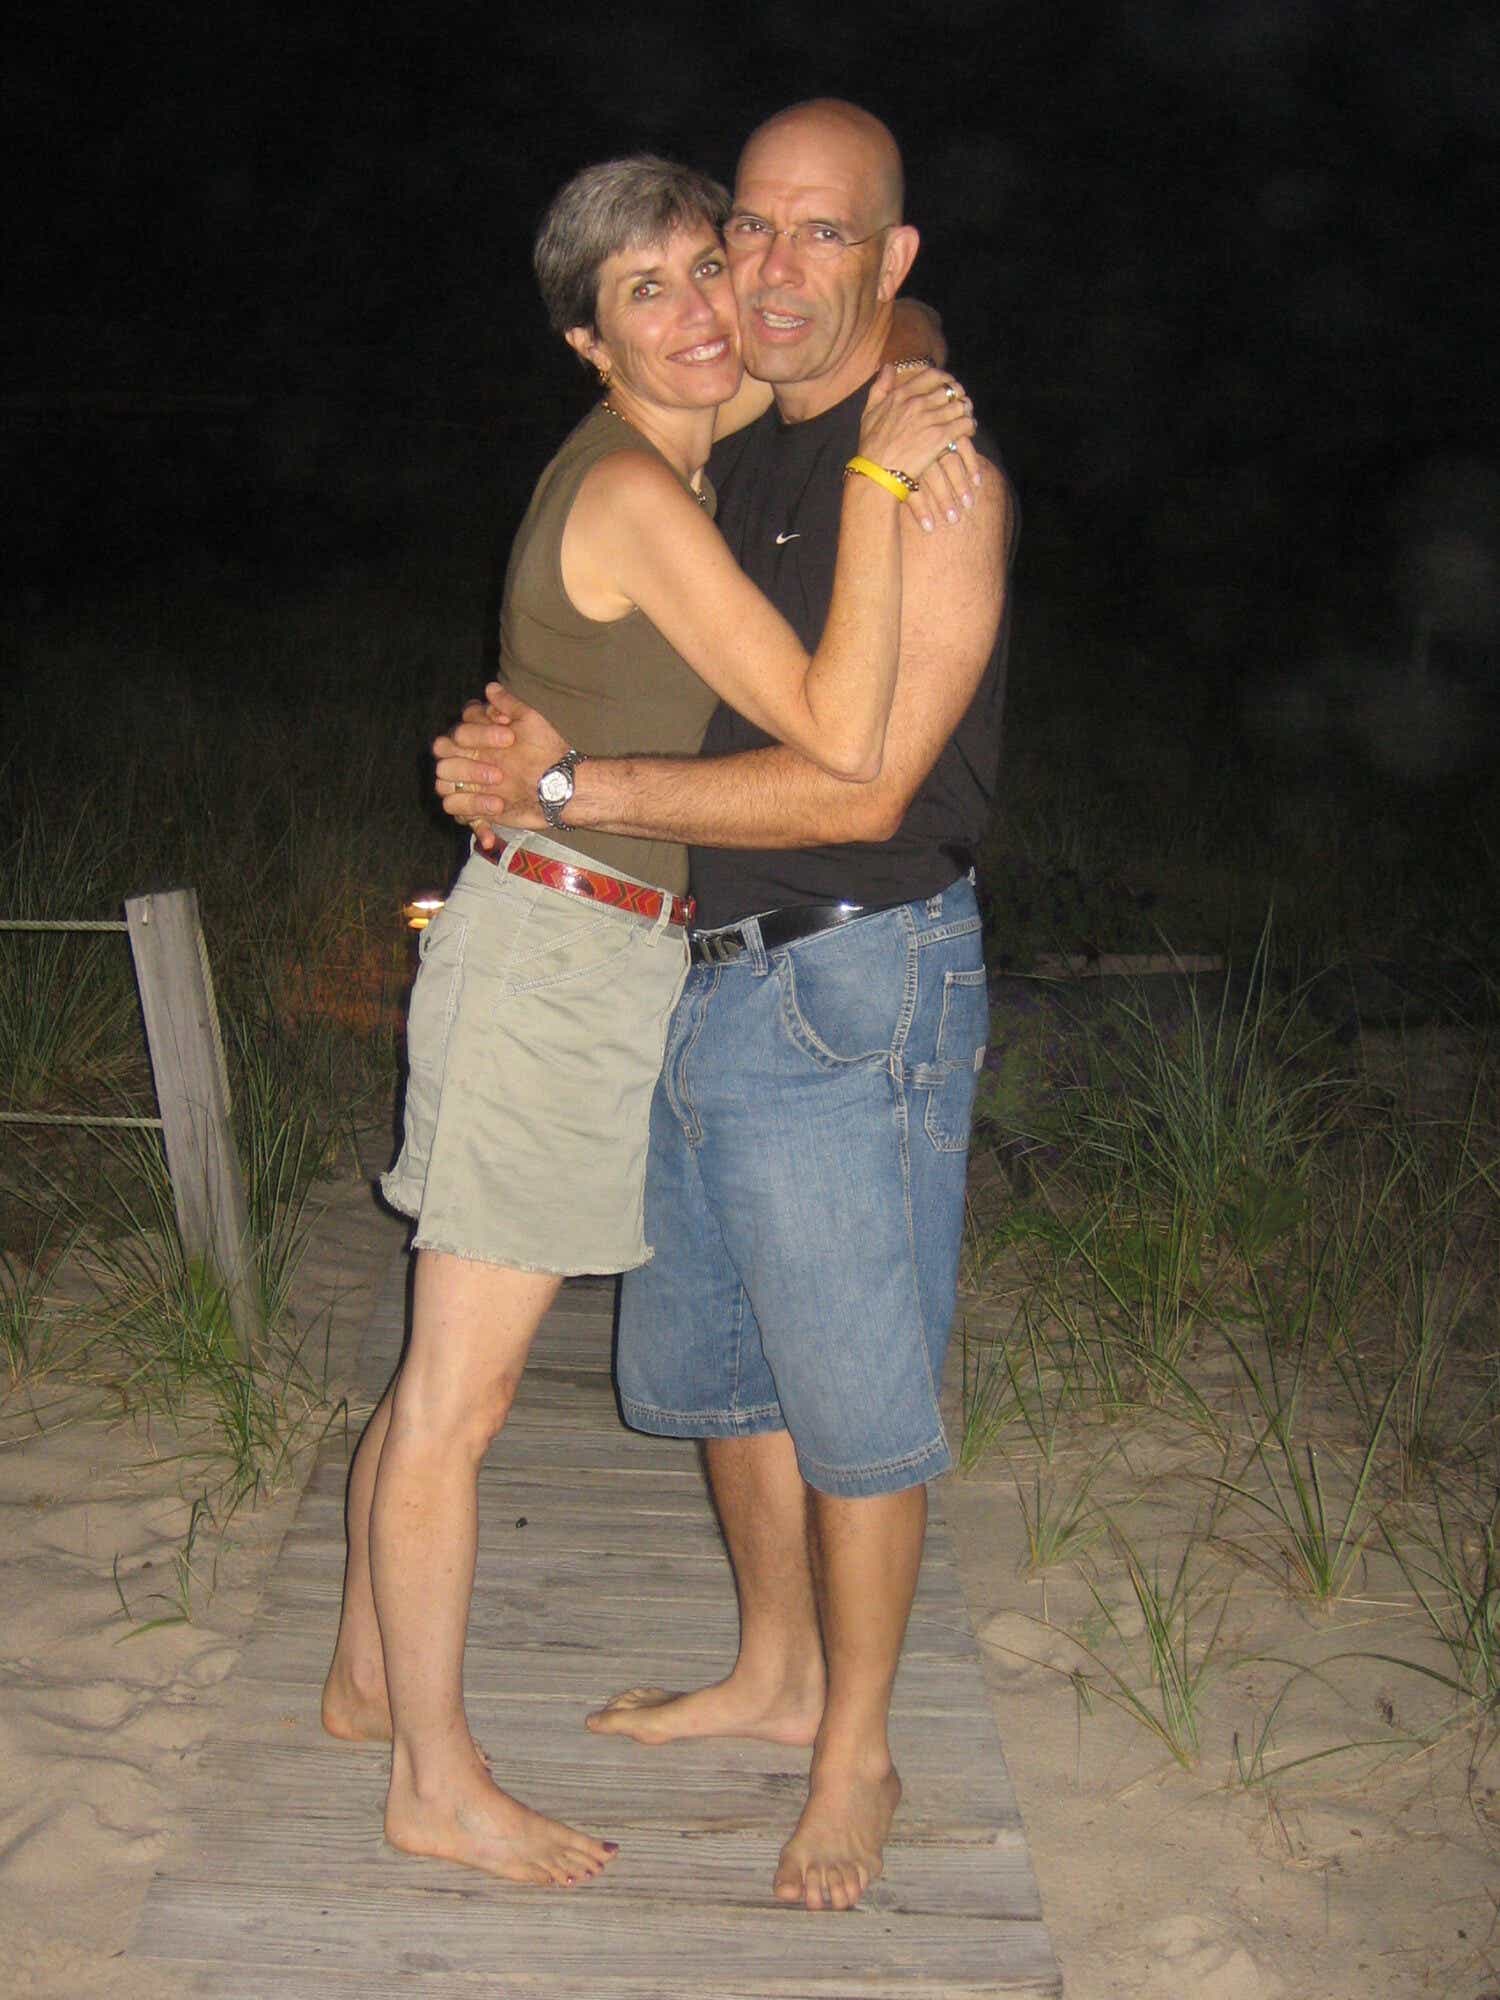 Janice and Ian hug on a beach at night